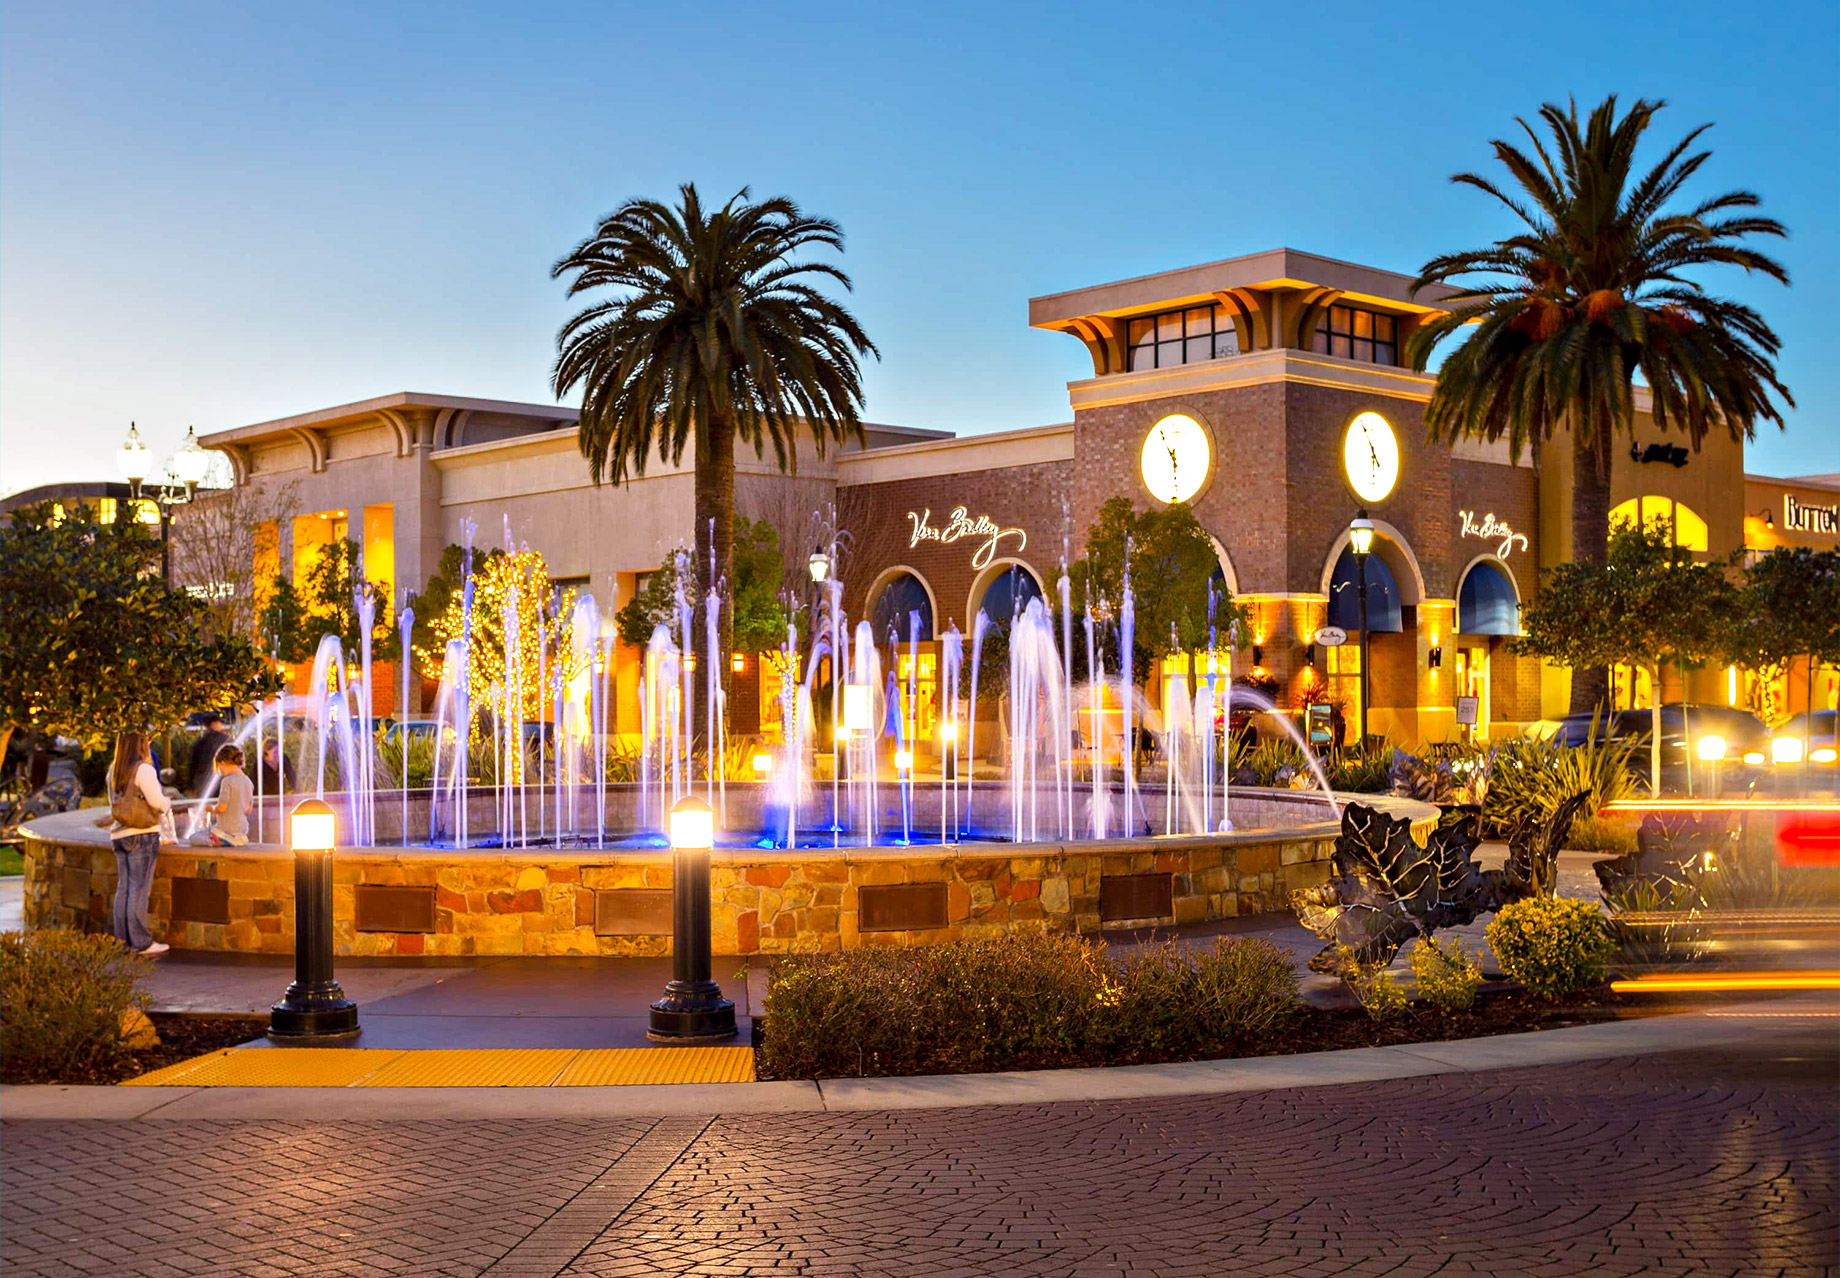 Shopping Center in Roseville, California